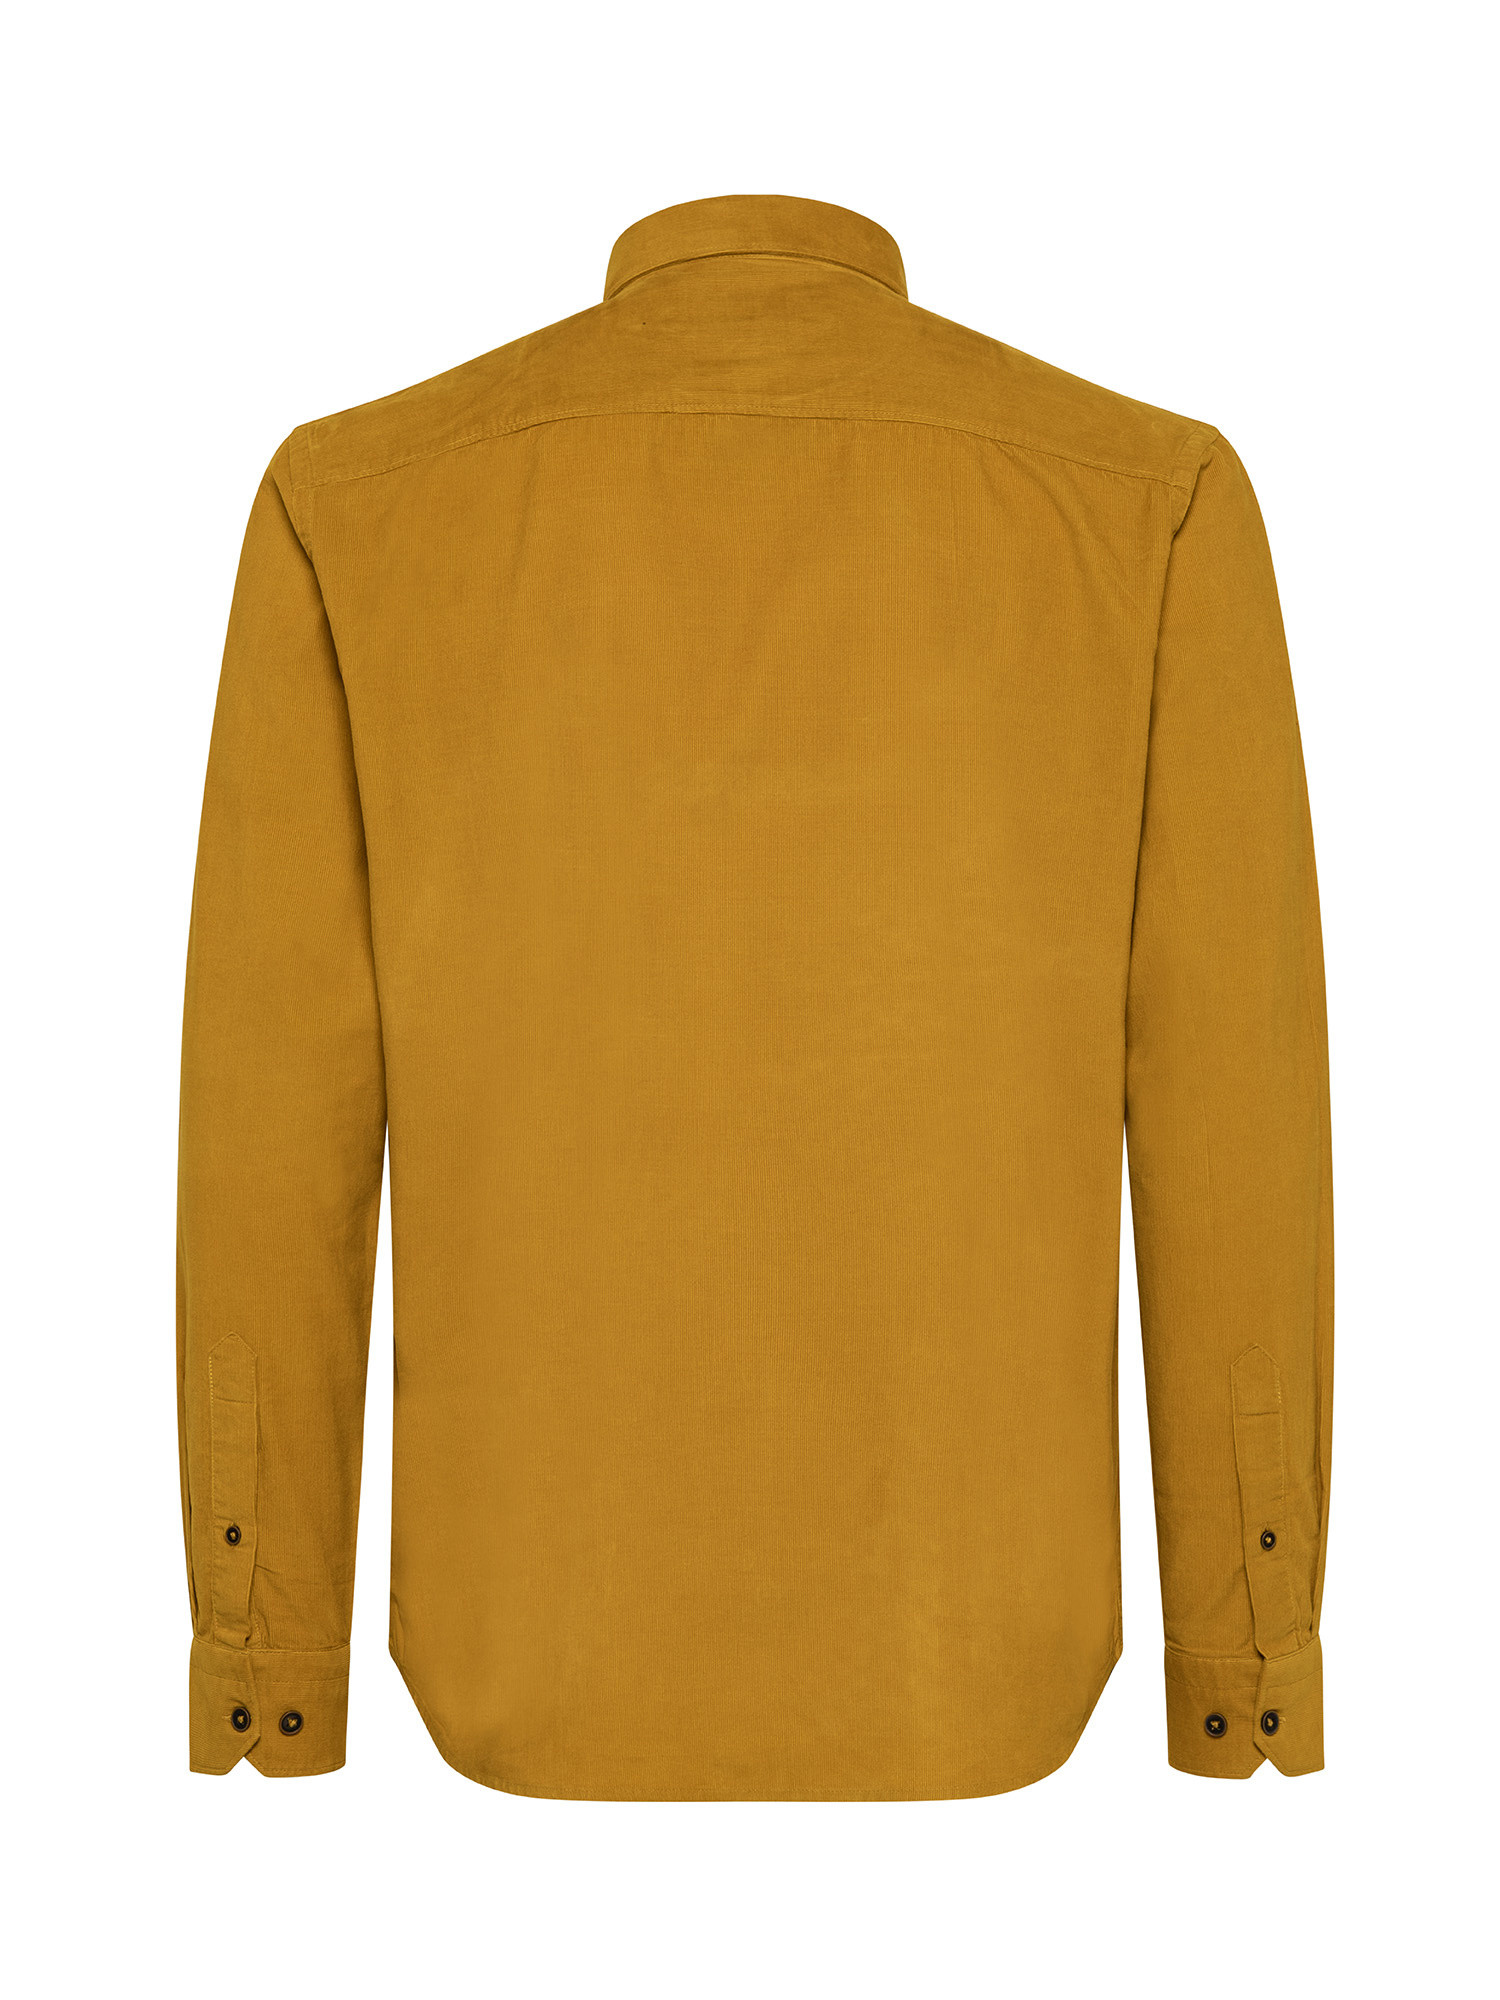 JCT - Camicia in velluto di cotone, Giallo senape, large image number 1